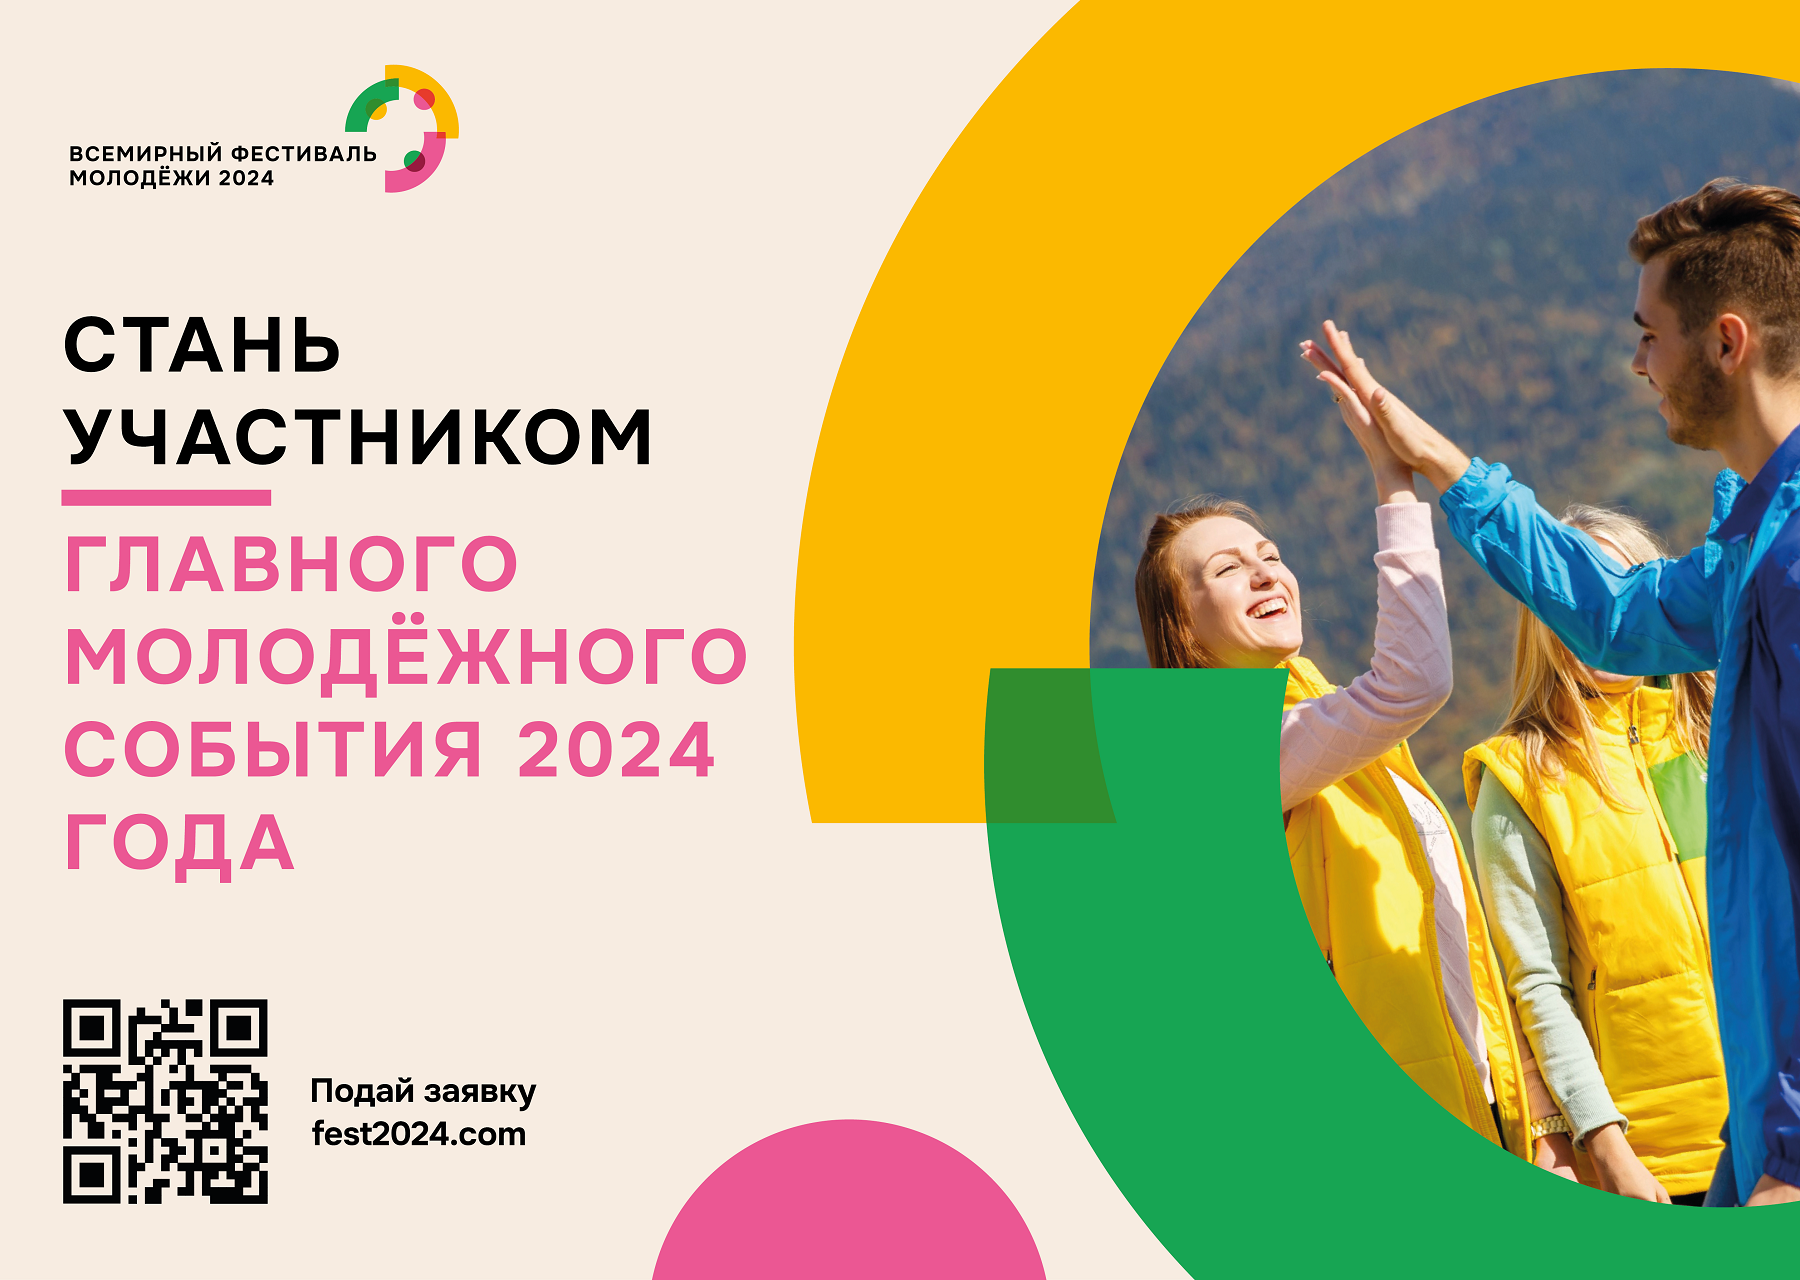 Всемирный фестиваль молодёжи 2024 в России. Всемирный молодежный фестиваль 2024 в Сочи. Всемирный фестиваль молодёжи в Сочи в 2024 году. Молодежный фестиваль Сириус 2024. Когда всемирный фестиваль молодежи в 2024 году